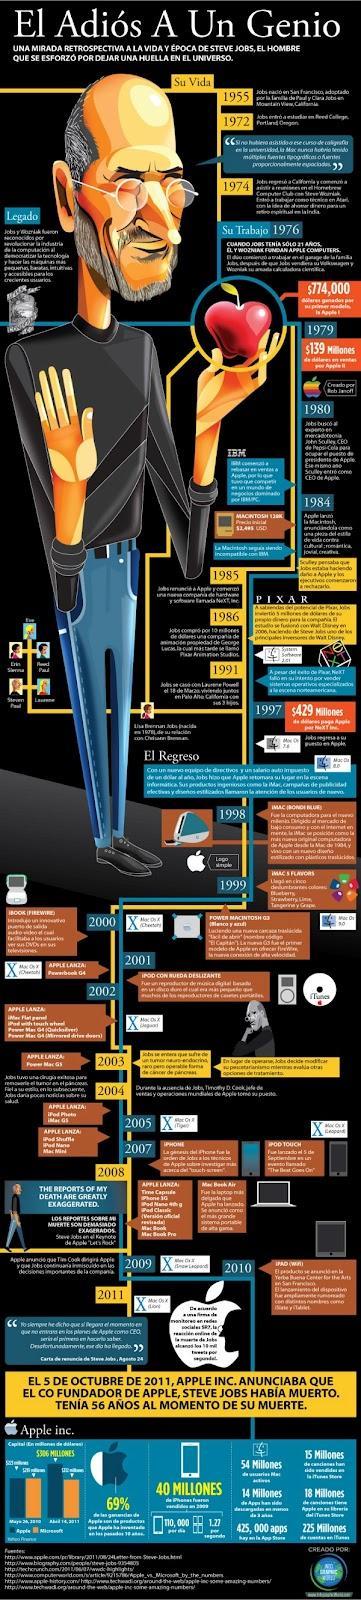 La vida de Steve Jobs en una infografía (Español)